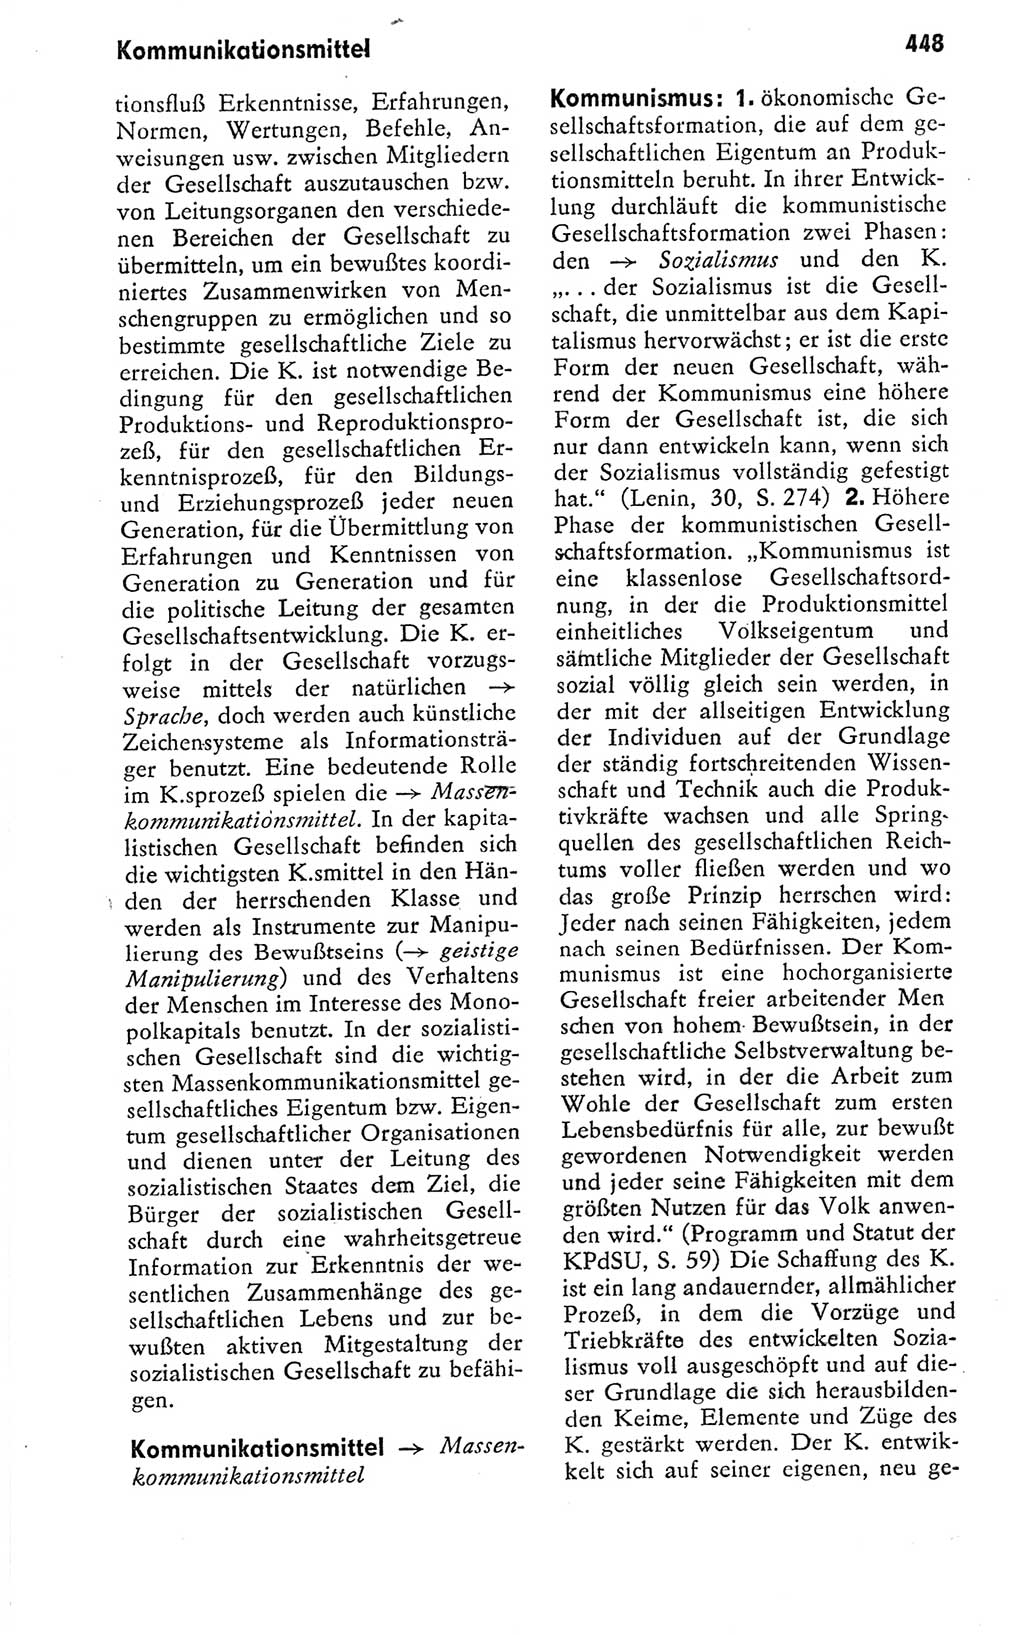 Kleines politisches Wörterbuch [Deutsche Demokratische Republik (DDR)] 1978, Seite 448 (Kl. pol. Wb. DDR 1978, S. 448)